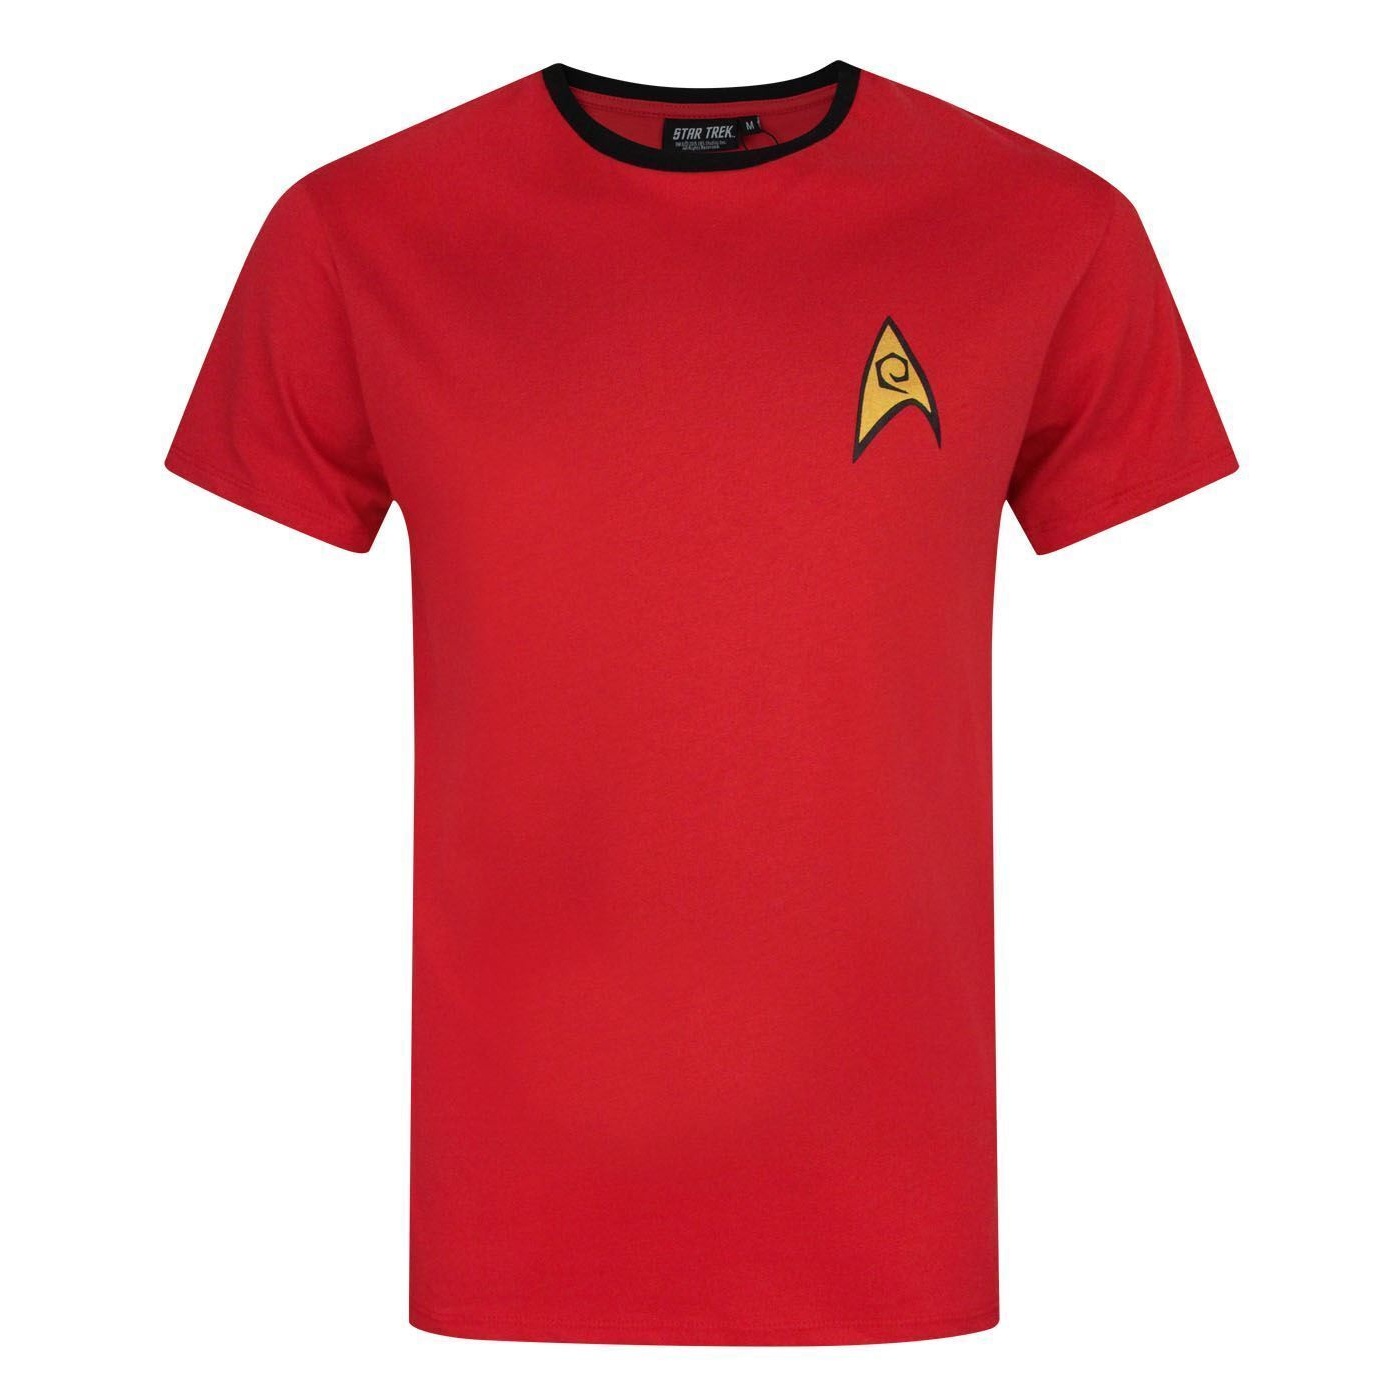 (スター・トレック) Star Trek オフィシャル商品 メンズ Security And Operations ユニフォーム Tシャツ 半袖 カットソー トップス 【海外通販】画像